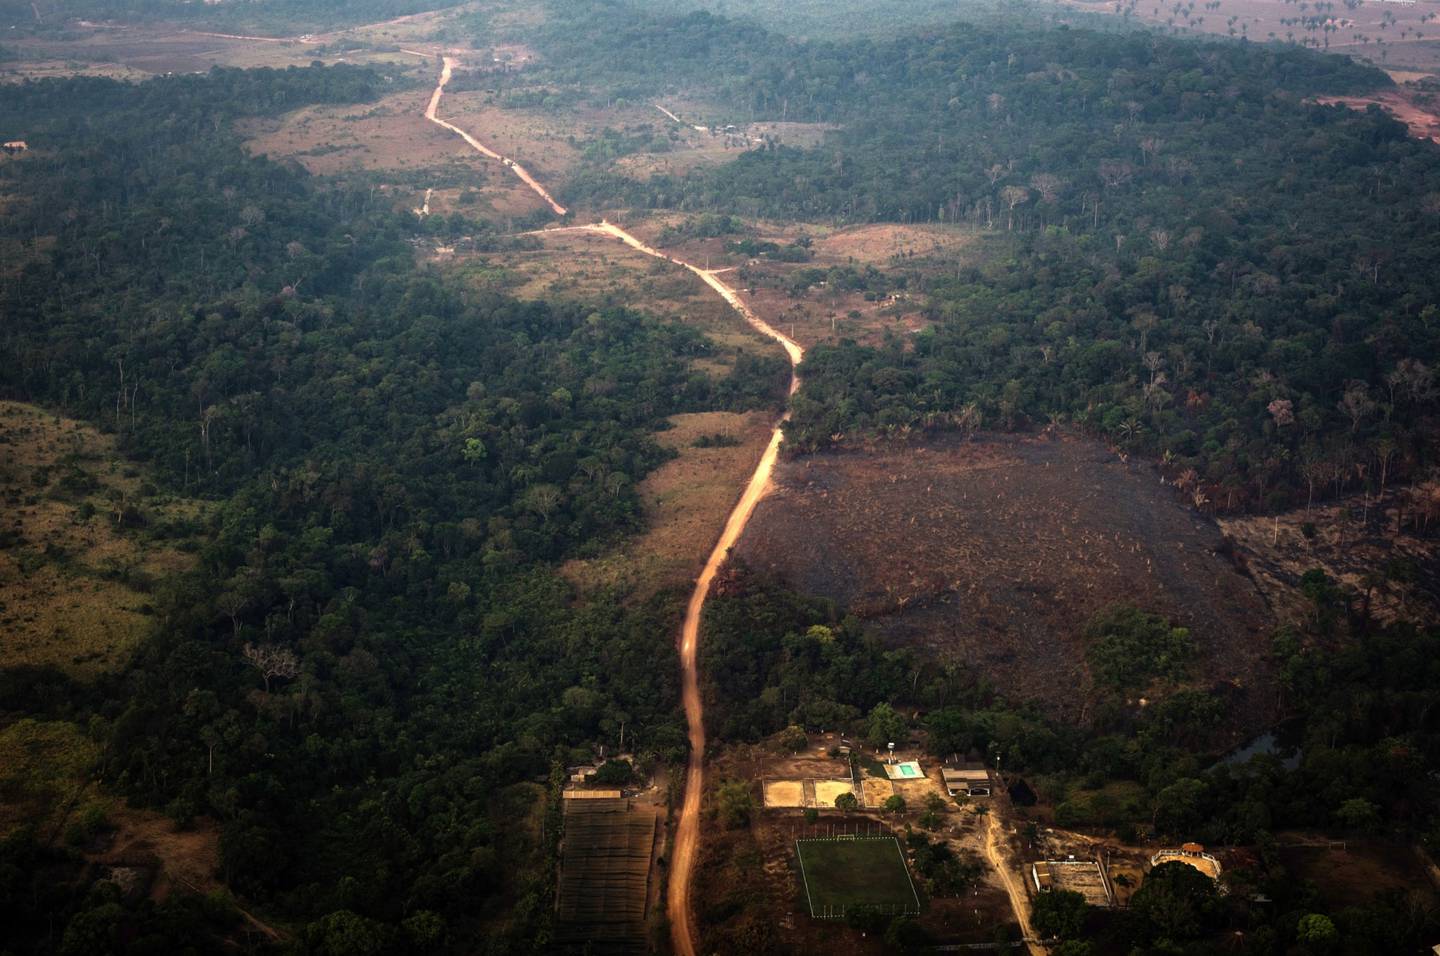 Terra destruída por fogo é dividida por uma estrada nesta fotografia aérea da Floresta Amazônica no estado de Rondôniadfd